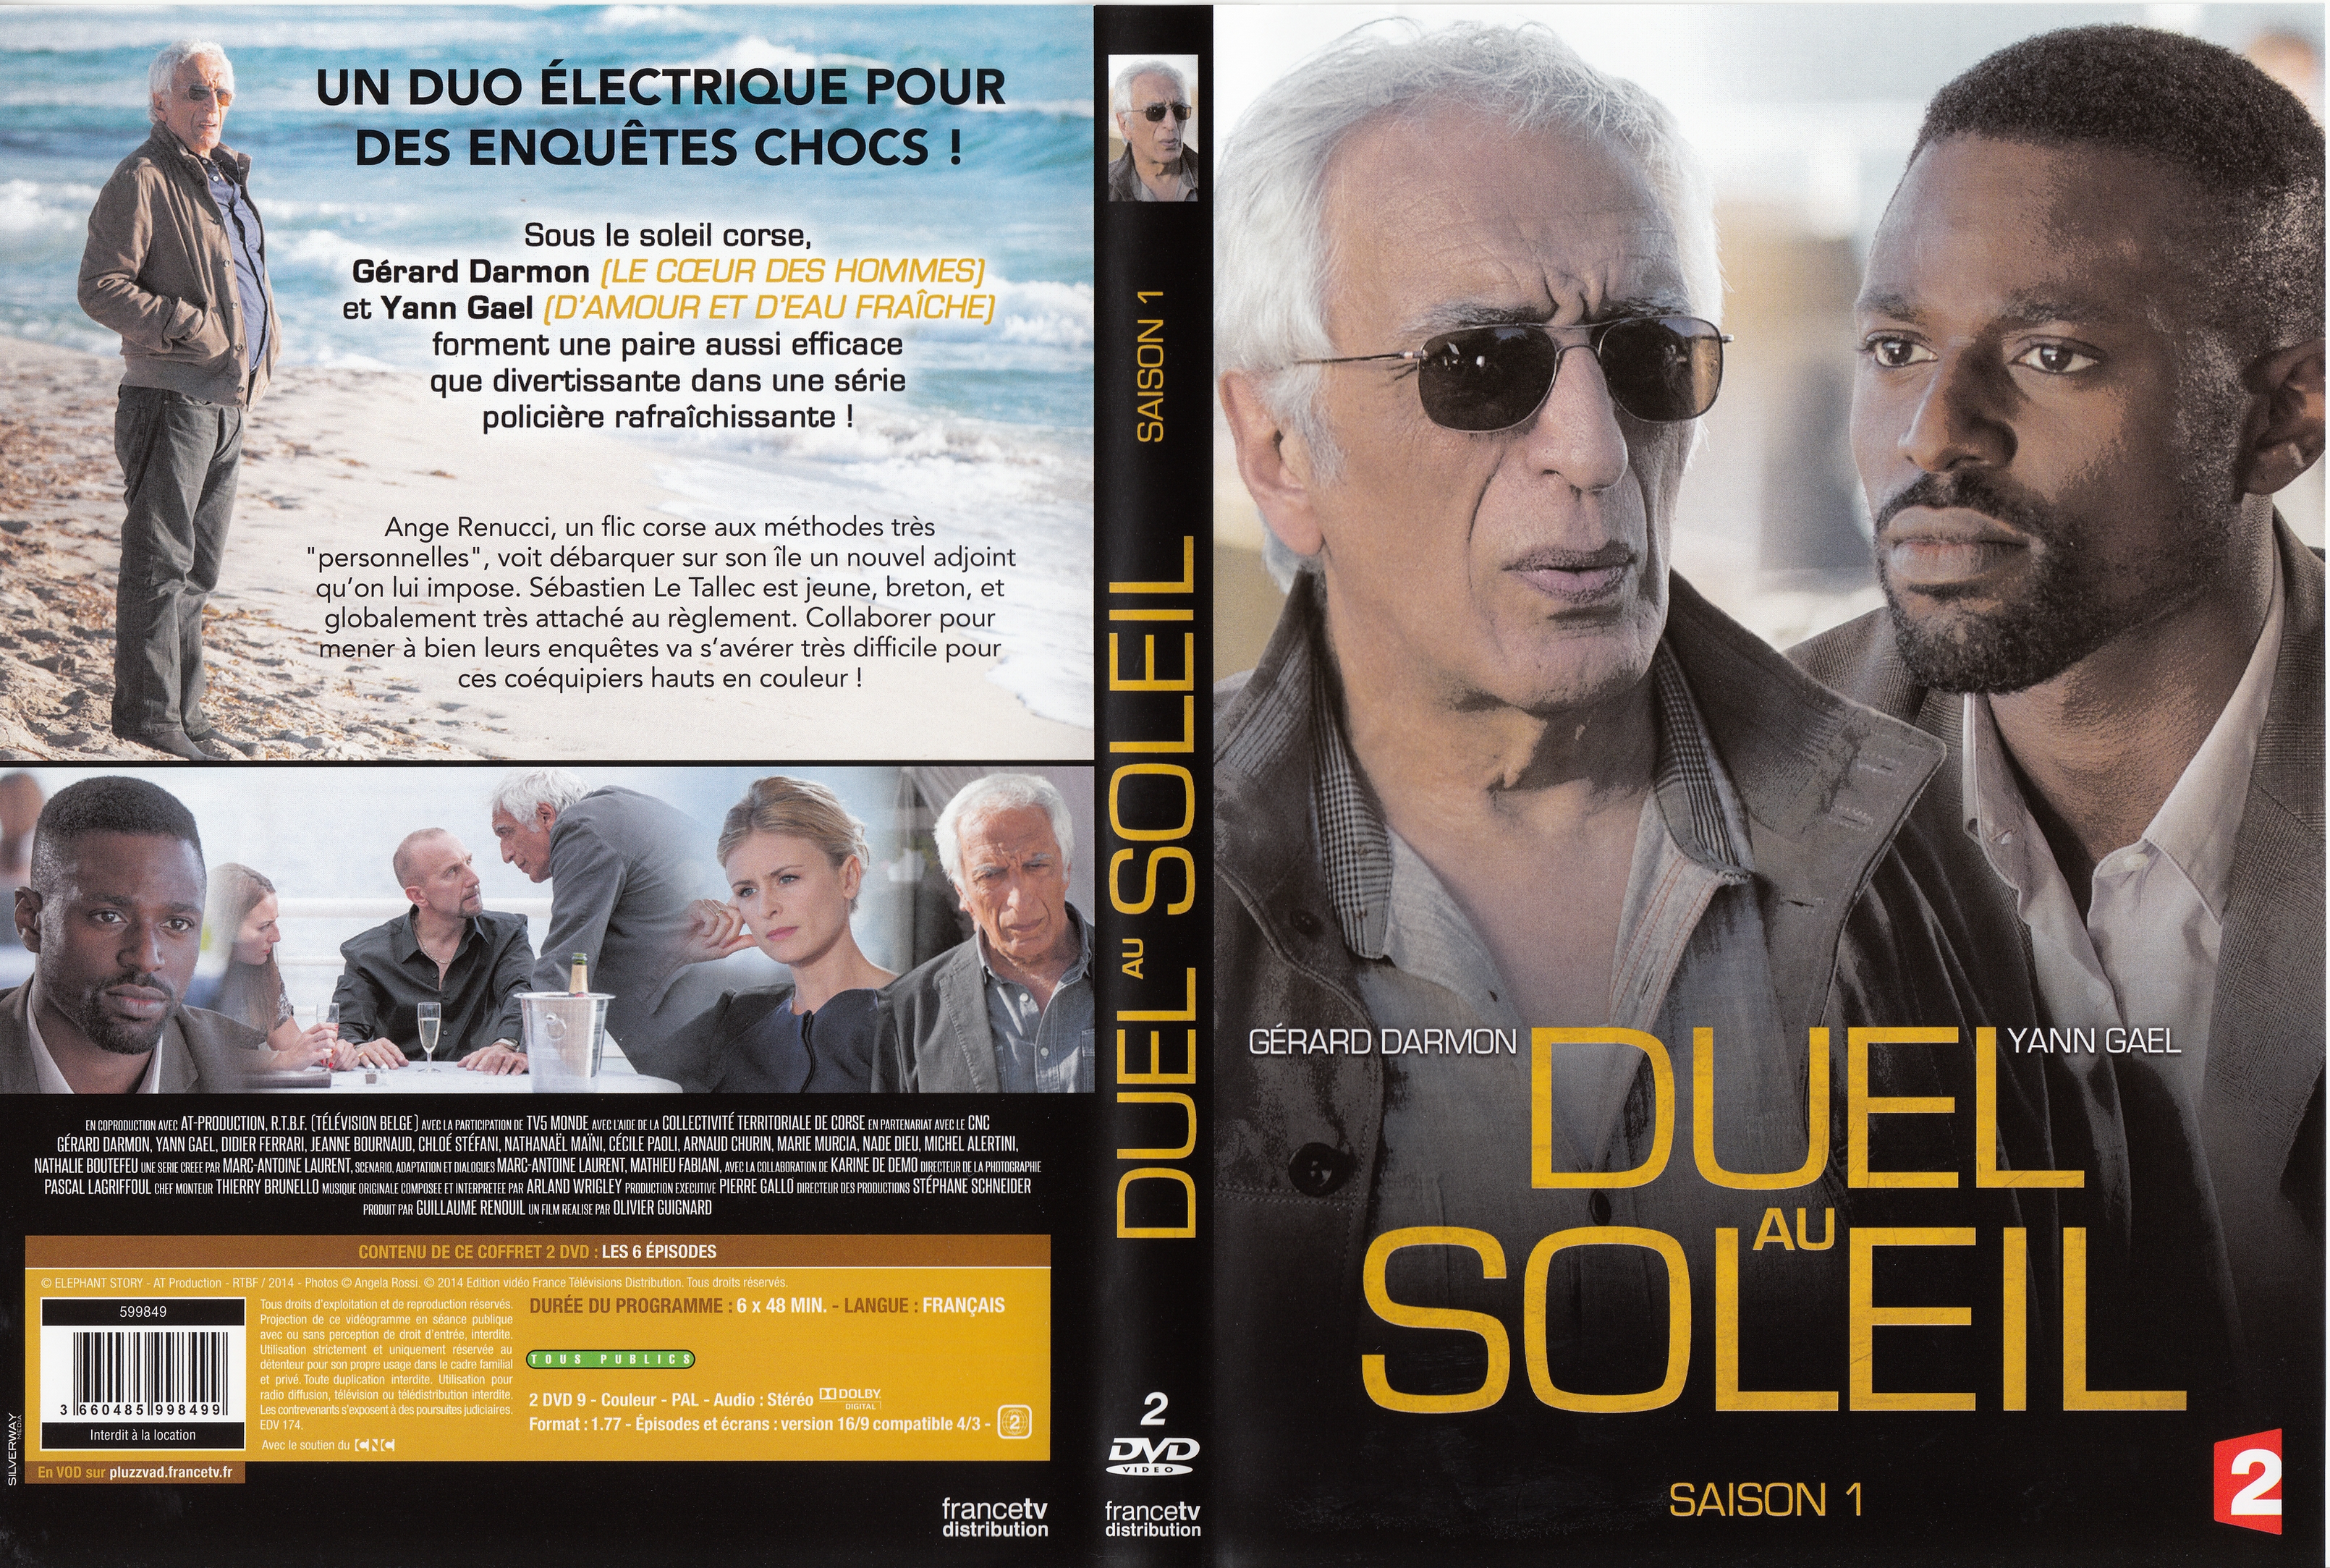 Jaquette DVD Duel au soleil saison 1